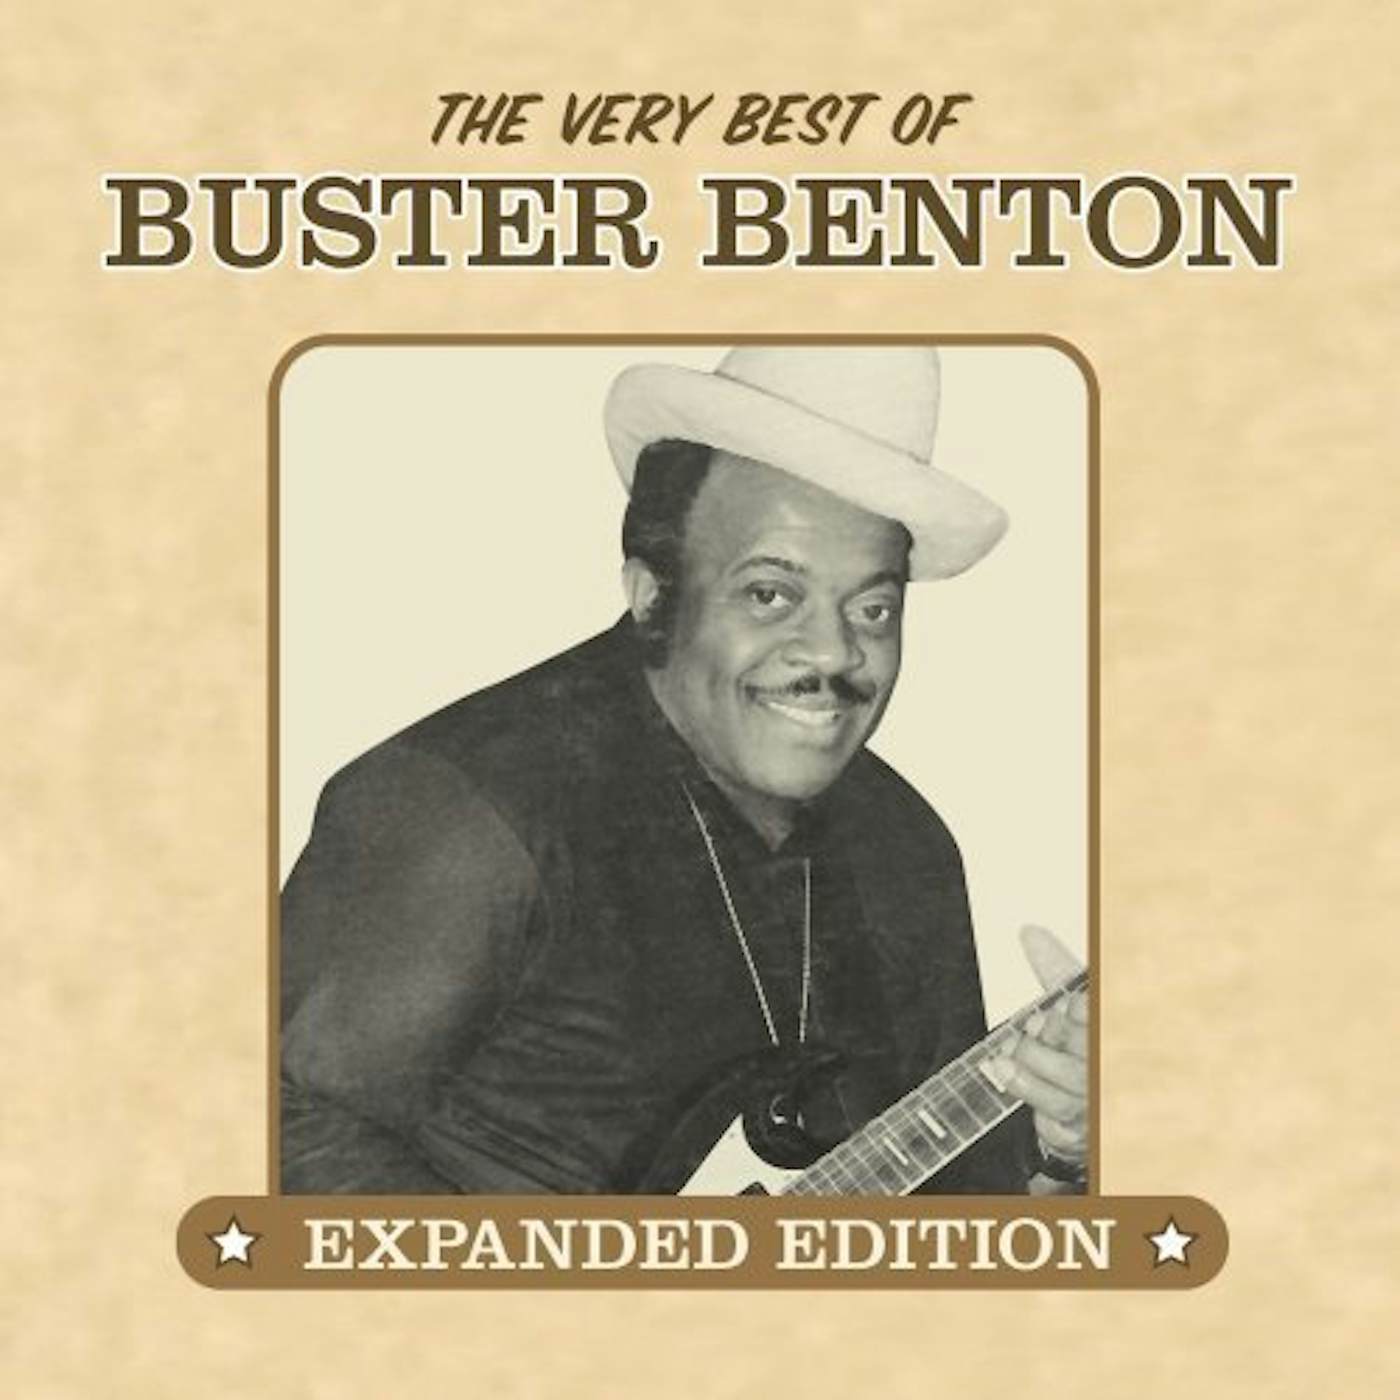 VERY BEST OF BUSTER BENTON CD